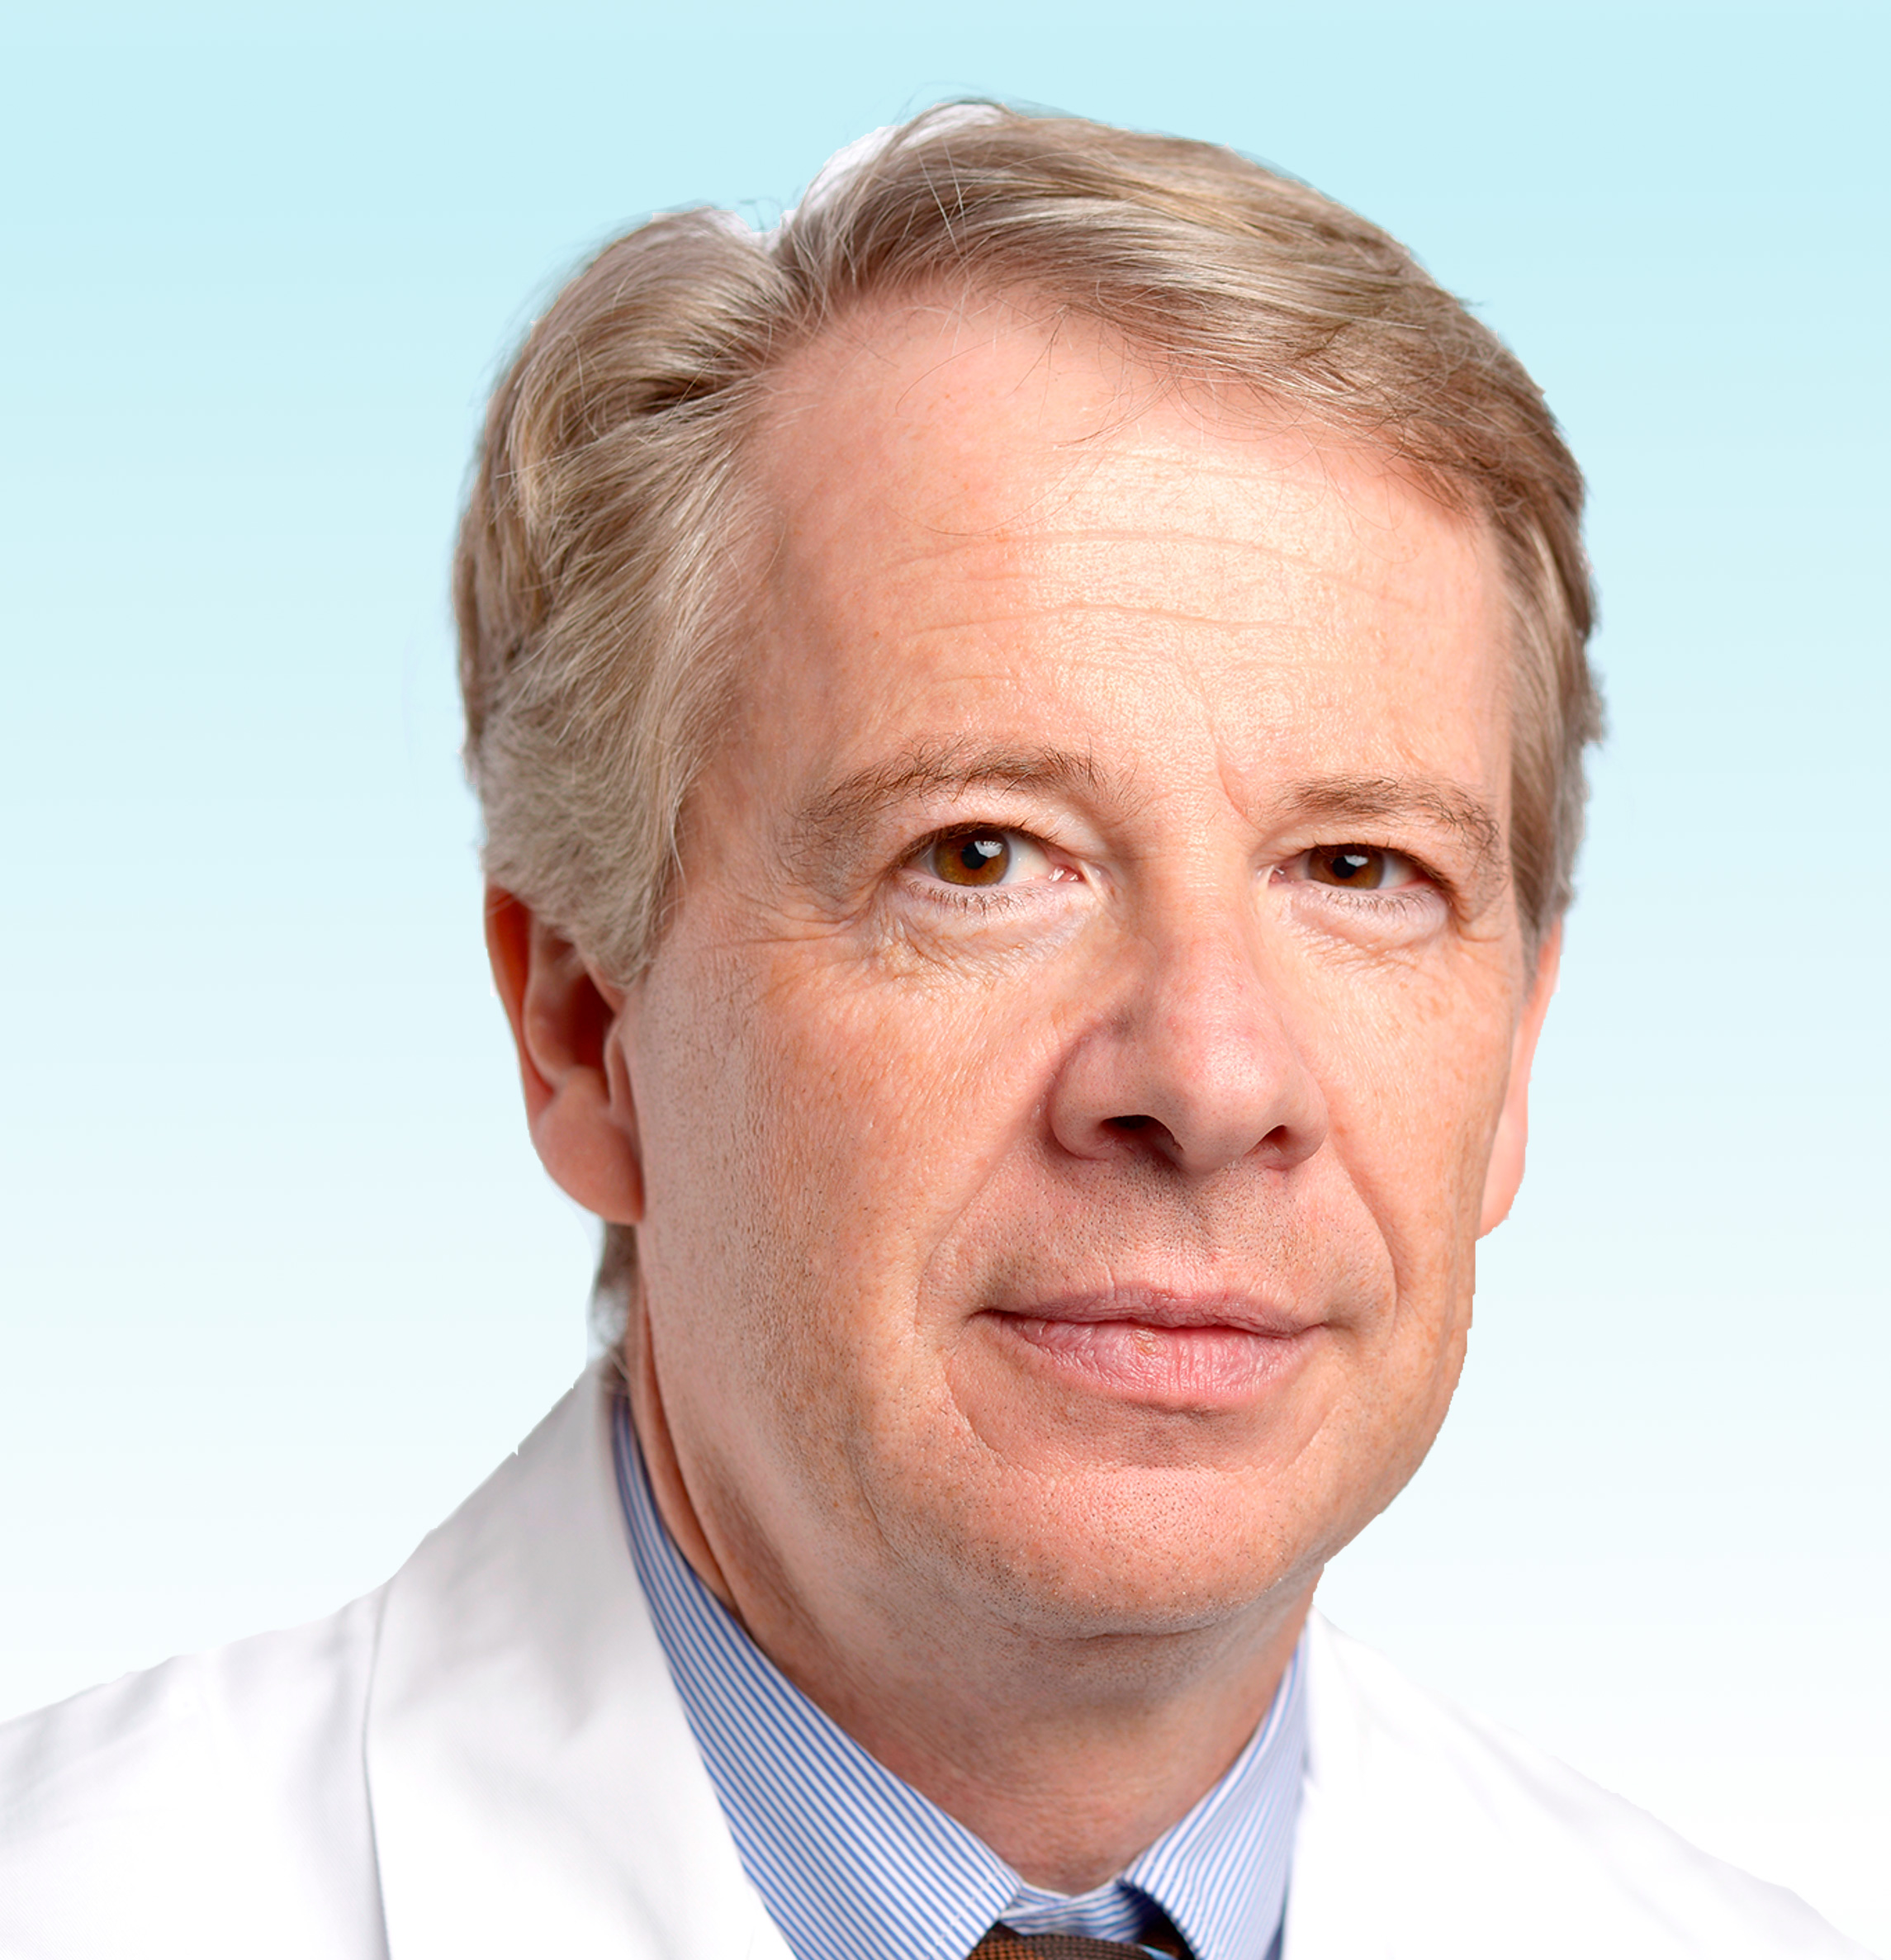 Dermatologist, Prof. Dr. med. Stephan Lautenschlager